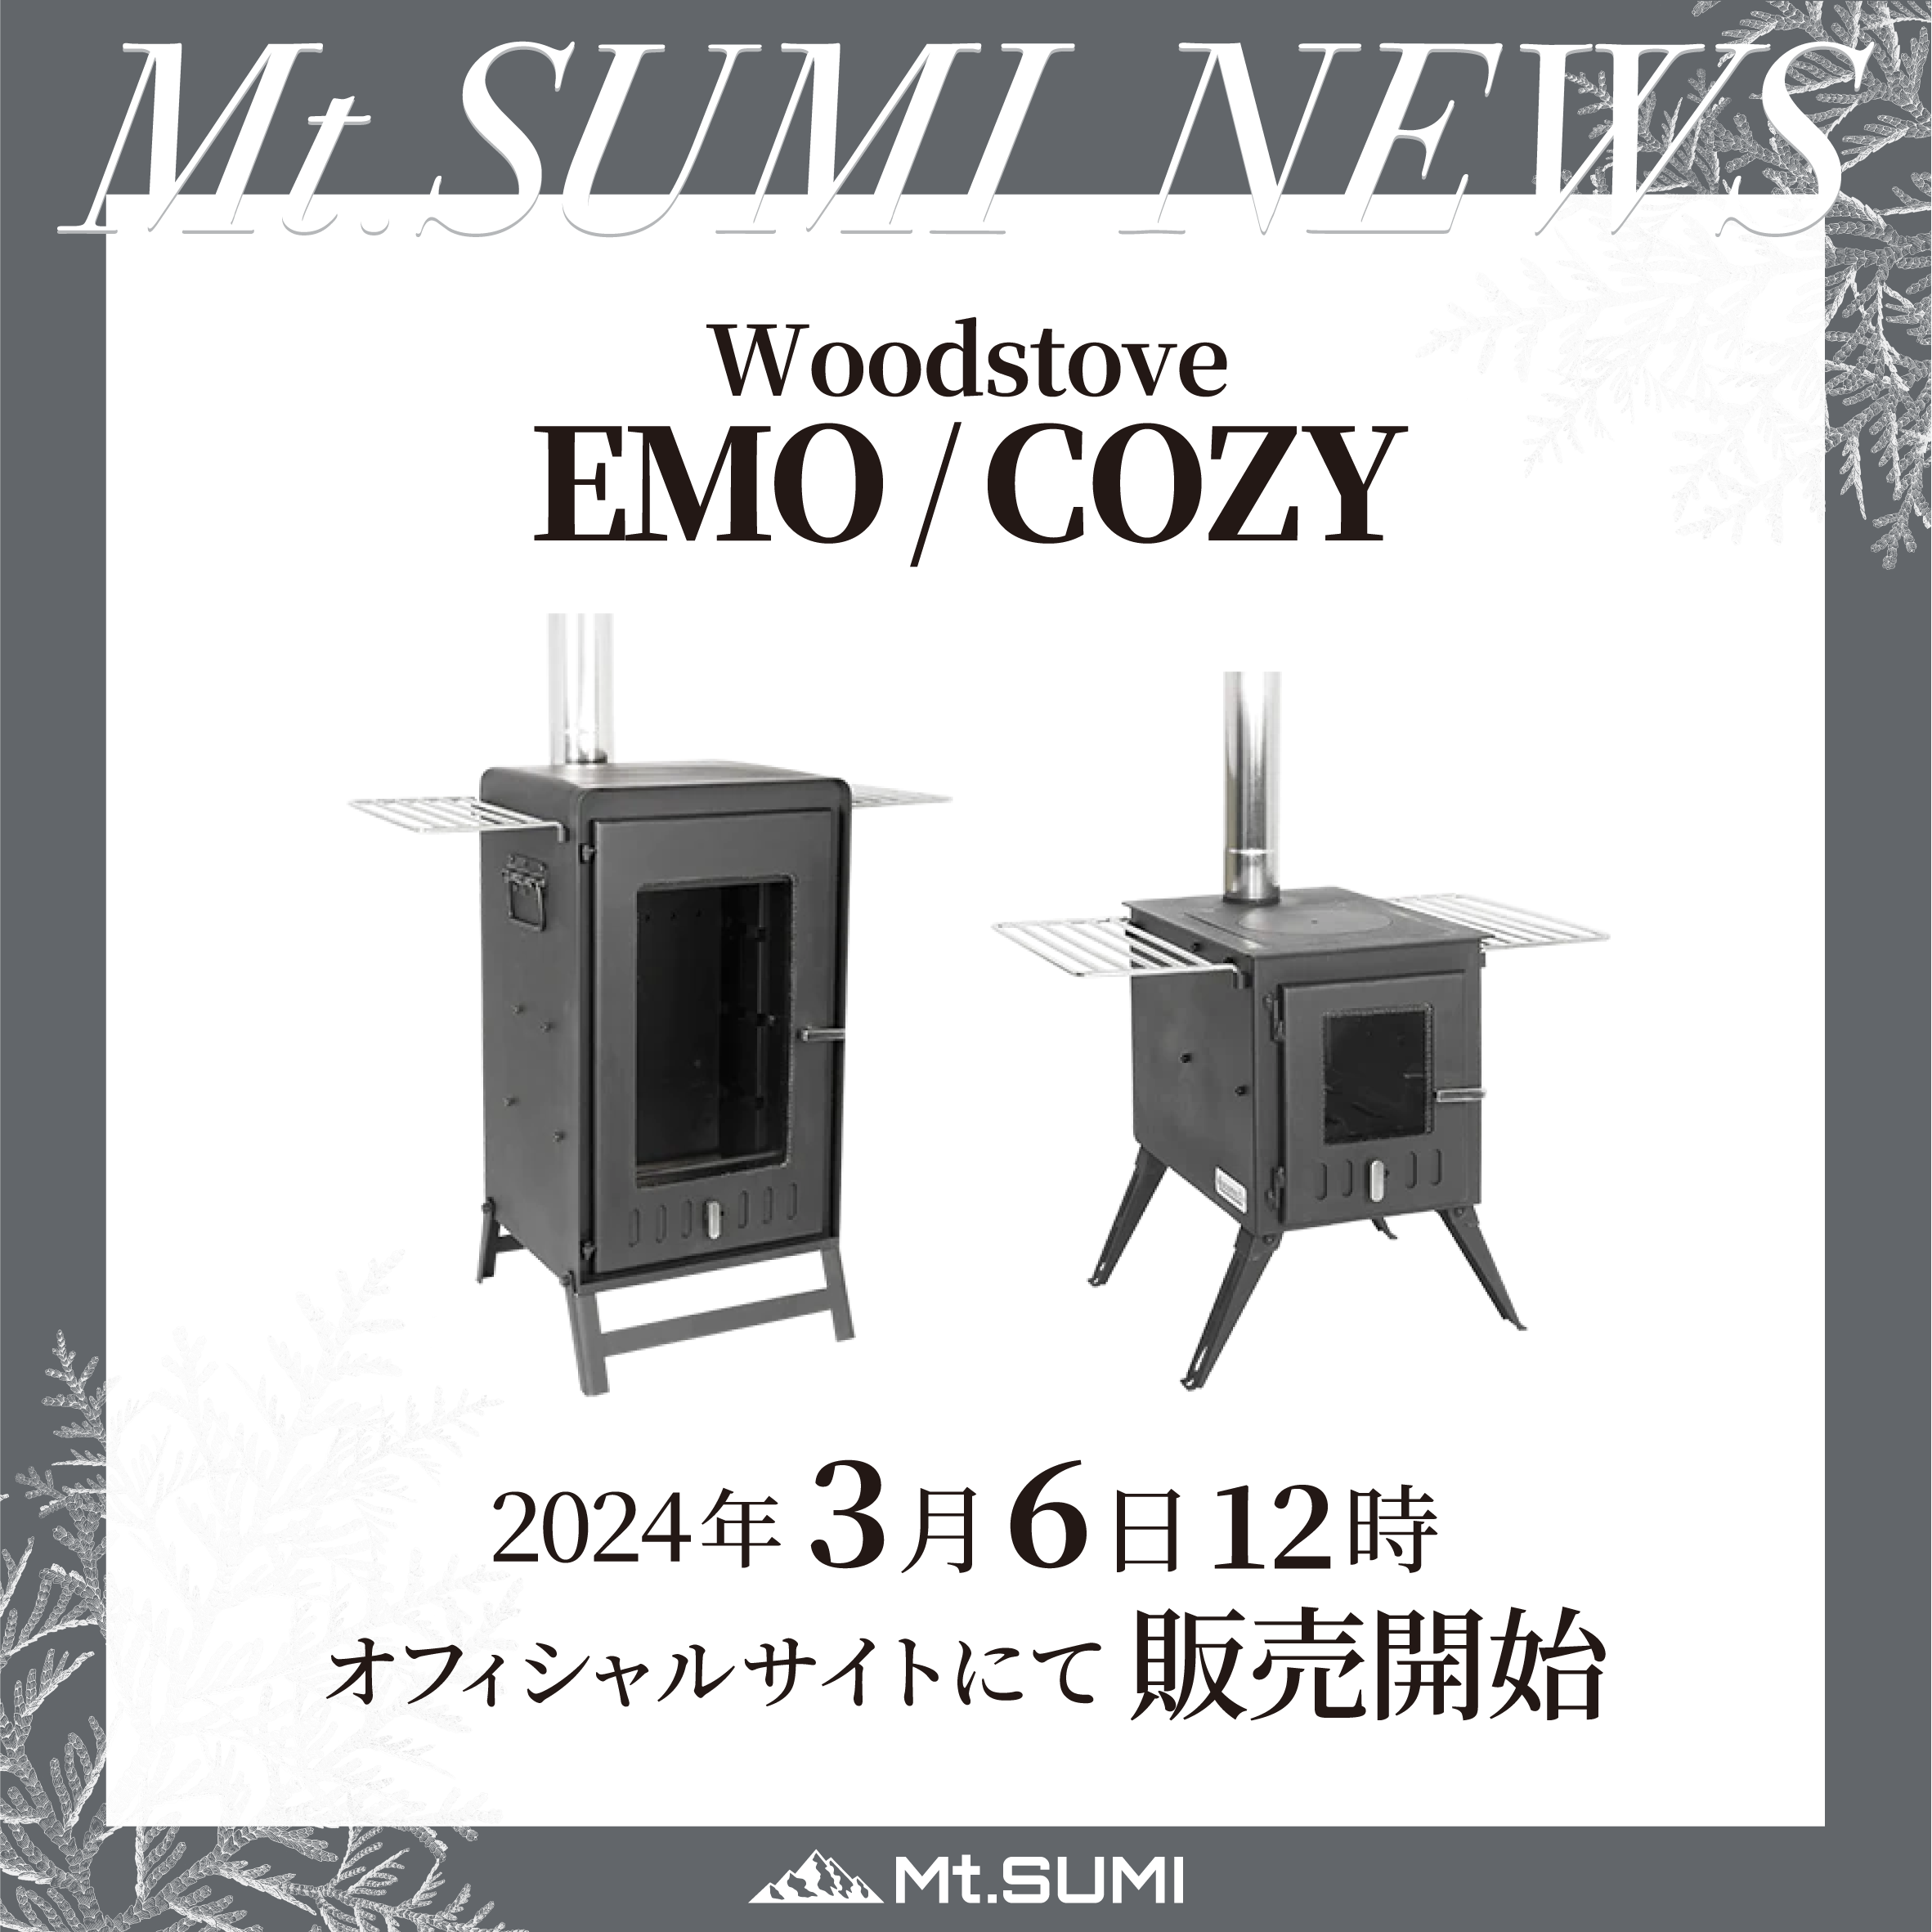 再販情報】「EMO」「COZY」3月6日(水) 12:00〜 数量限定で特別販売